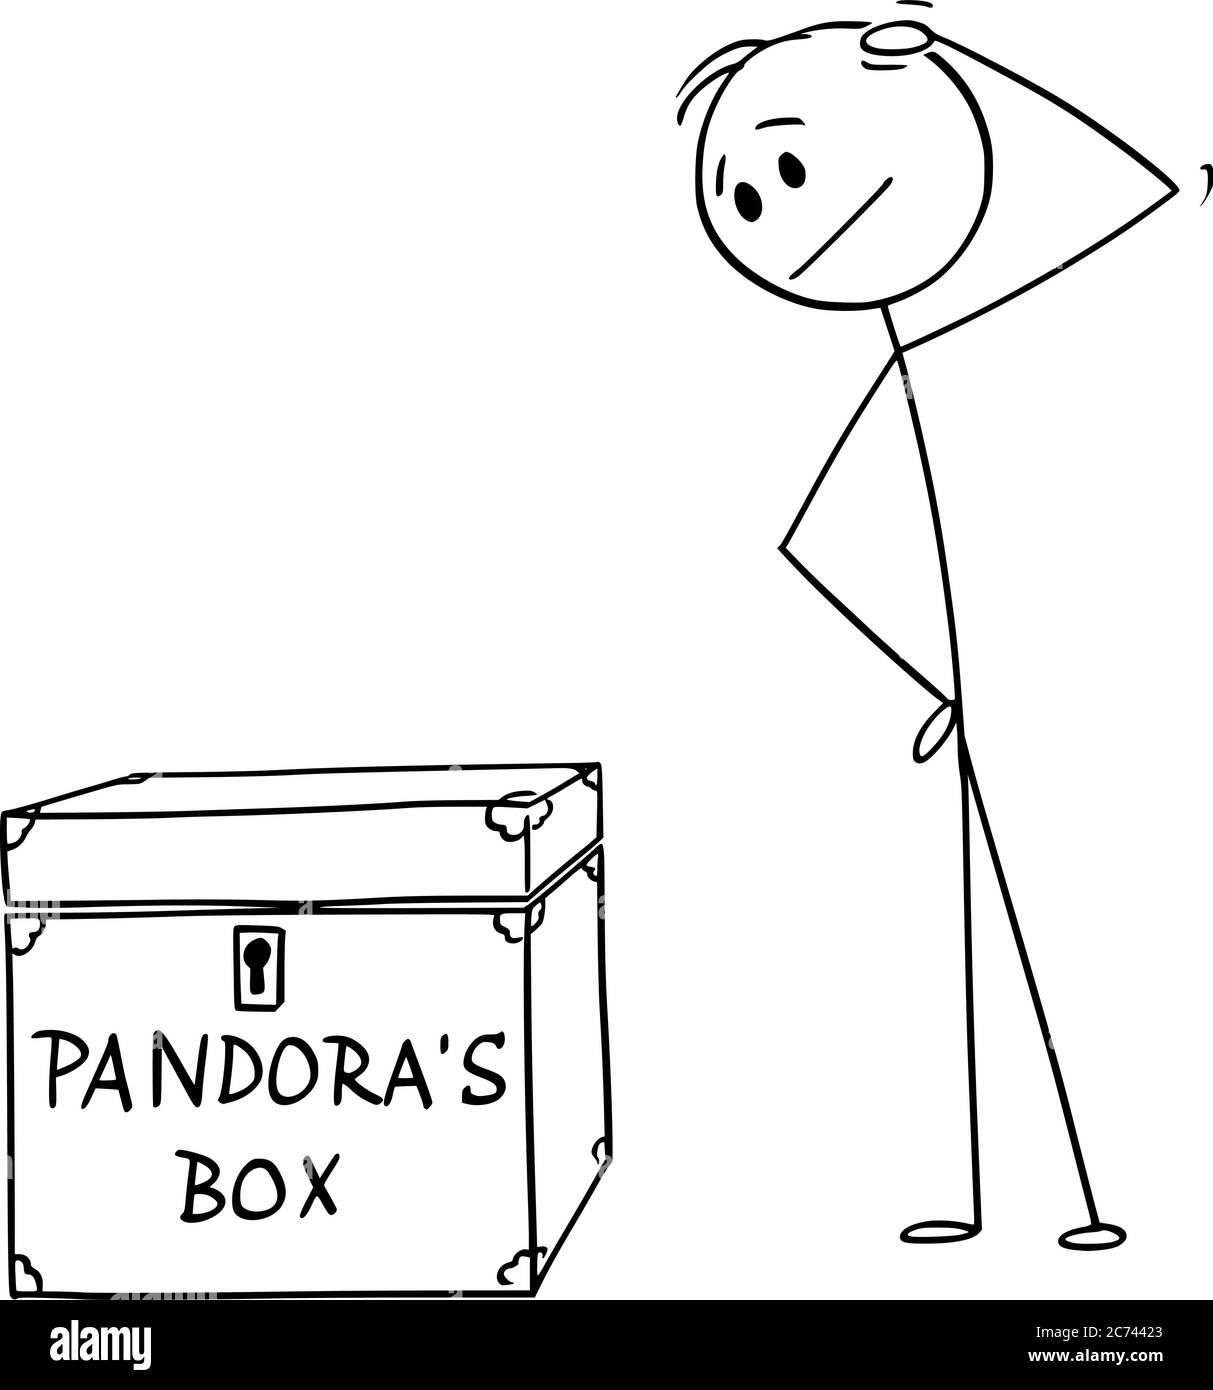 Vektor Cartoon Stick Figur Zeichnung konzeptionelle Illustration von Mann oder Geschäftsmann denken über Risiko und Gelegenheit, Pandora Box zu öffnen. Stock Vektor